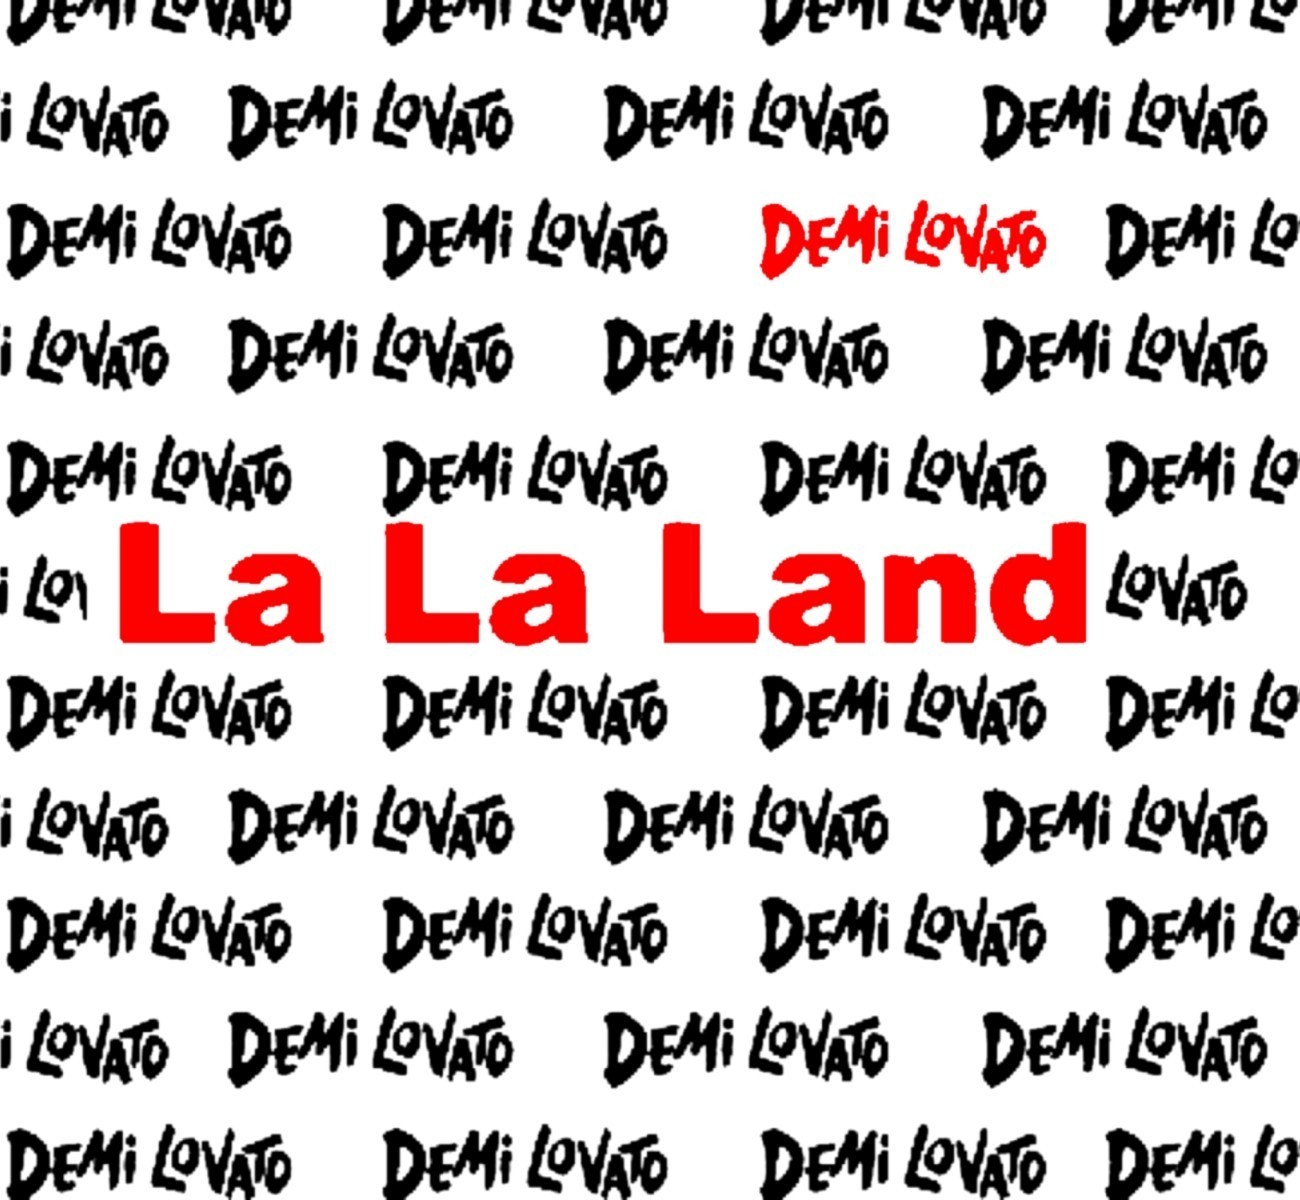 La La Land [fanmade Single Cover] - Demi Lovato - HD Wallpaper 